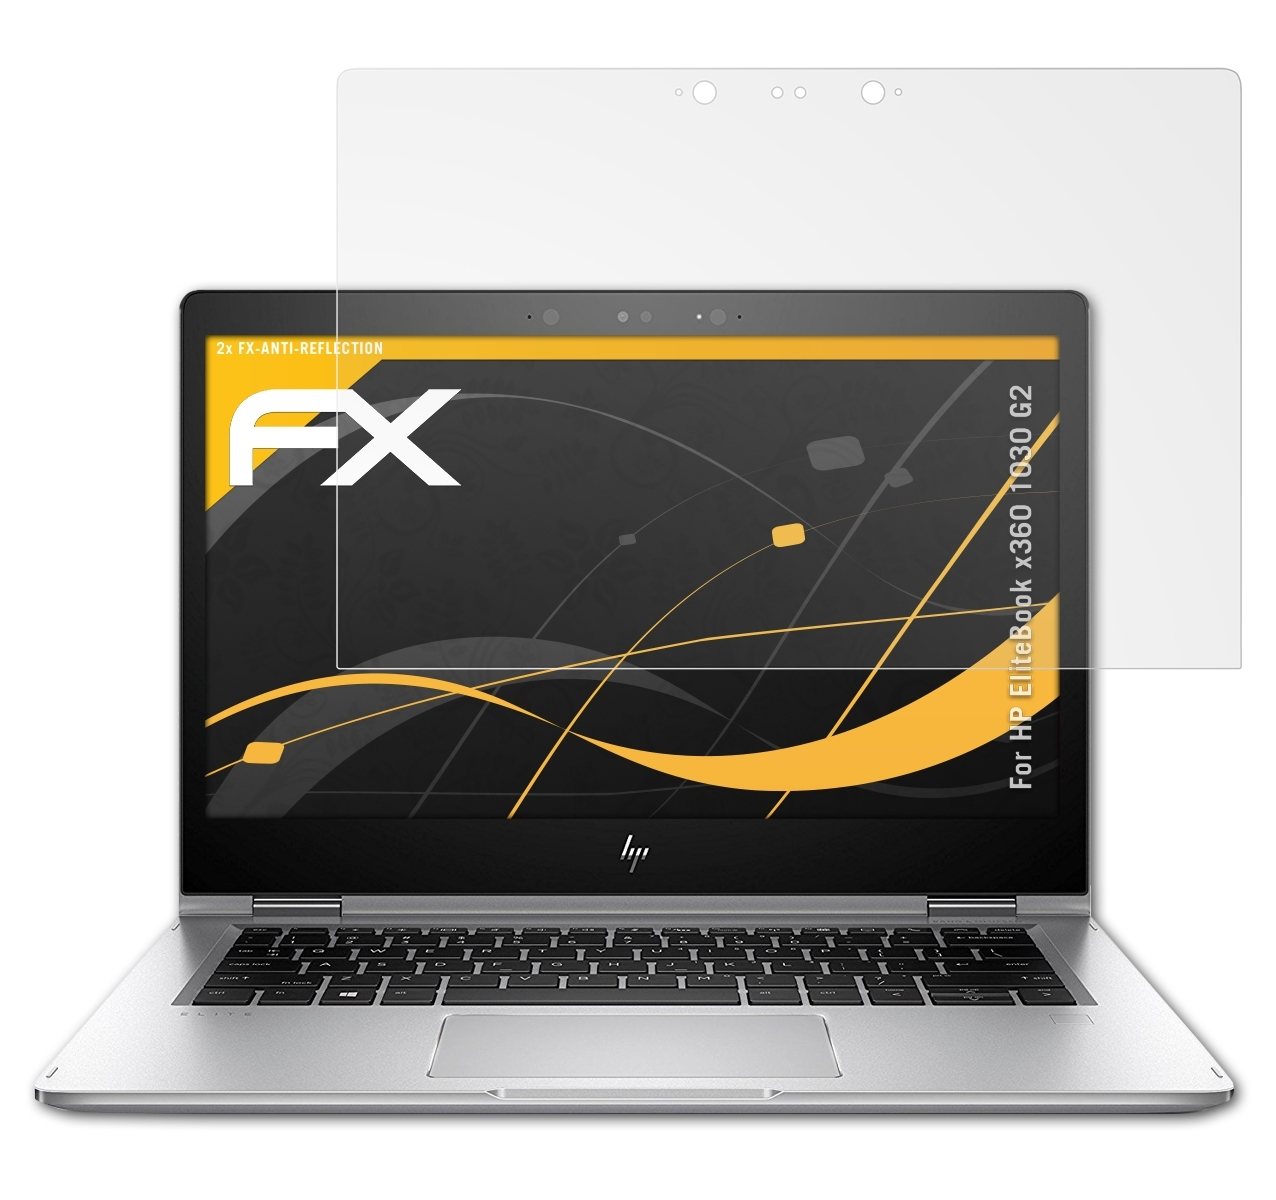 2x 1030 x360 ATFOLIX G2) Displayschutz(für EliteBook FX-Antireflex HP